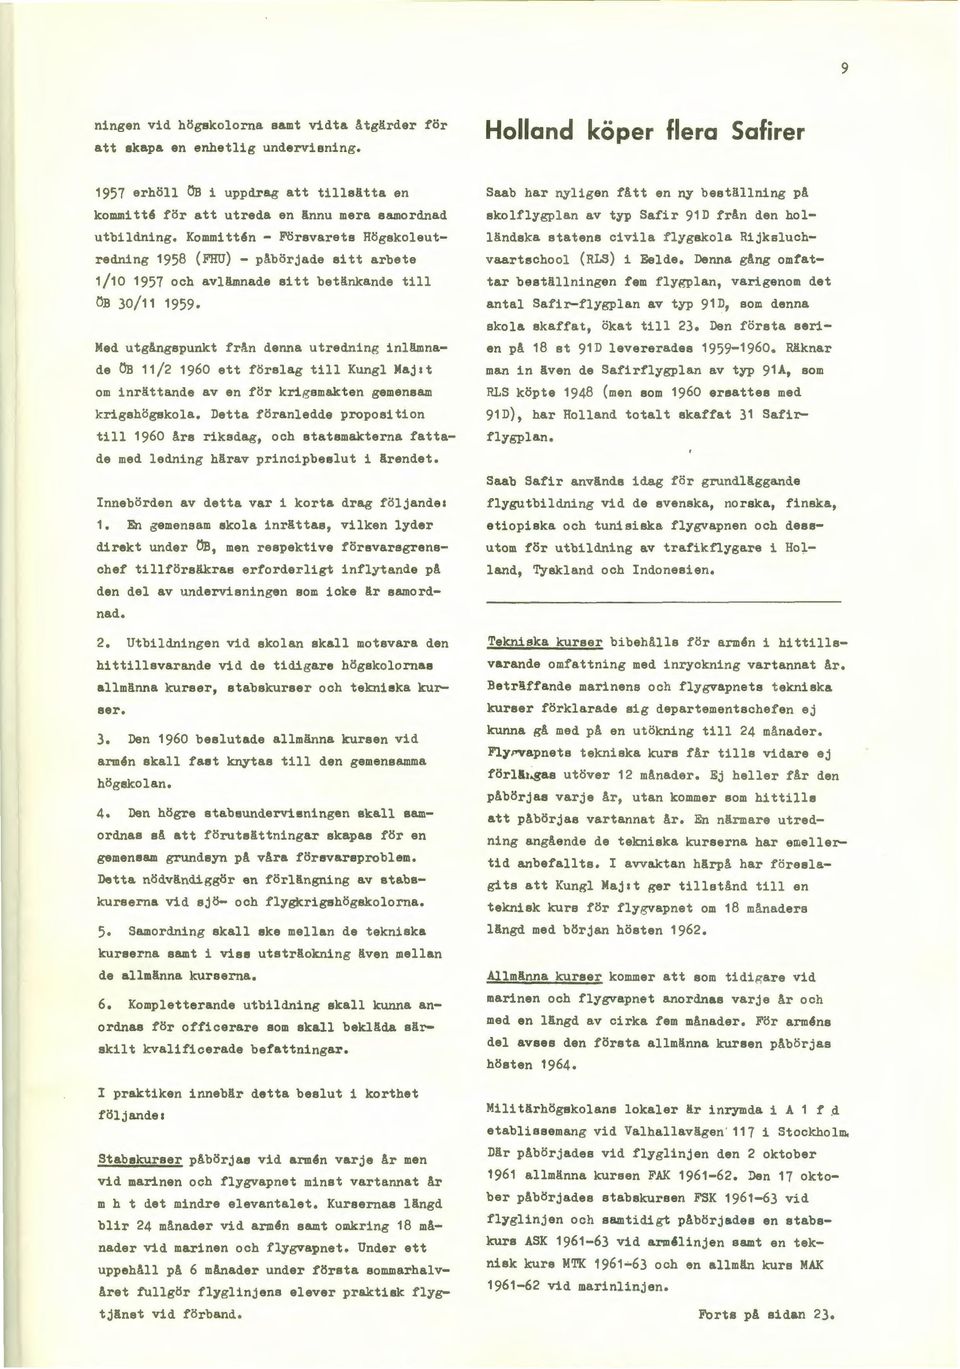 Kommitt6n - Försvarets Högskoleutredning 1958 (FHU) - päbörjade sitt arbete 1/10 1957 och avlämnade sitt betänkande till ÖB 30/11 1959.